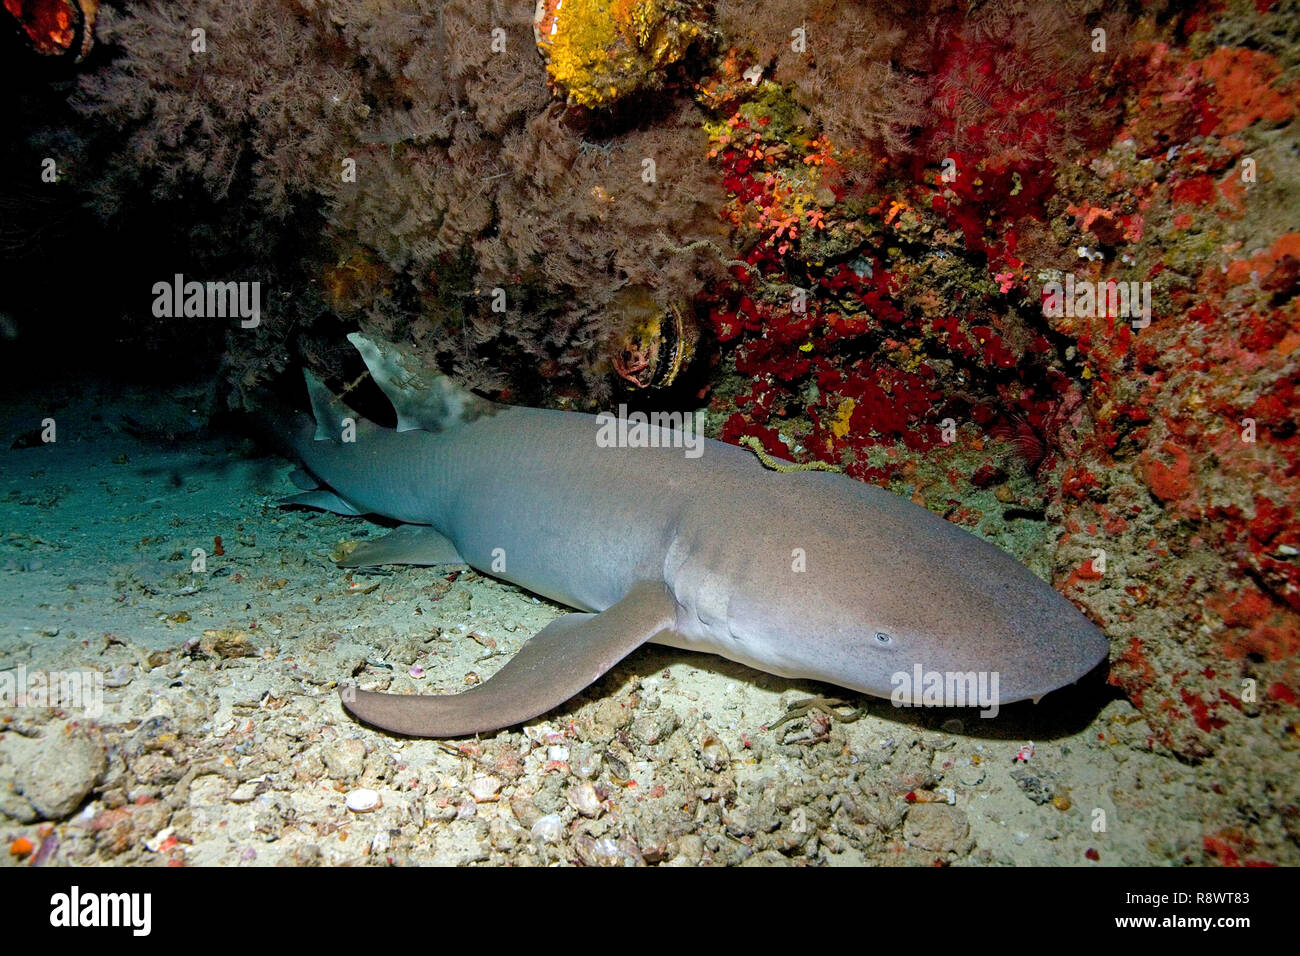 Requin nourrice fauve ou requin nourrice commune (Nebrius ferrugineus) dormir sous un surplomb, Ari Atoll, Maldives, océan Indien, Asie Banque D'Images